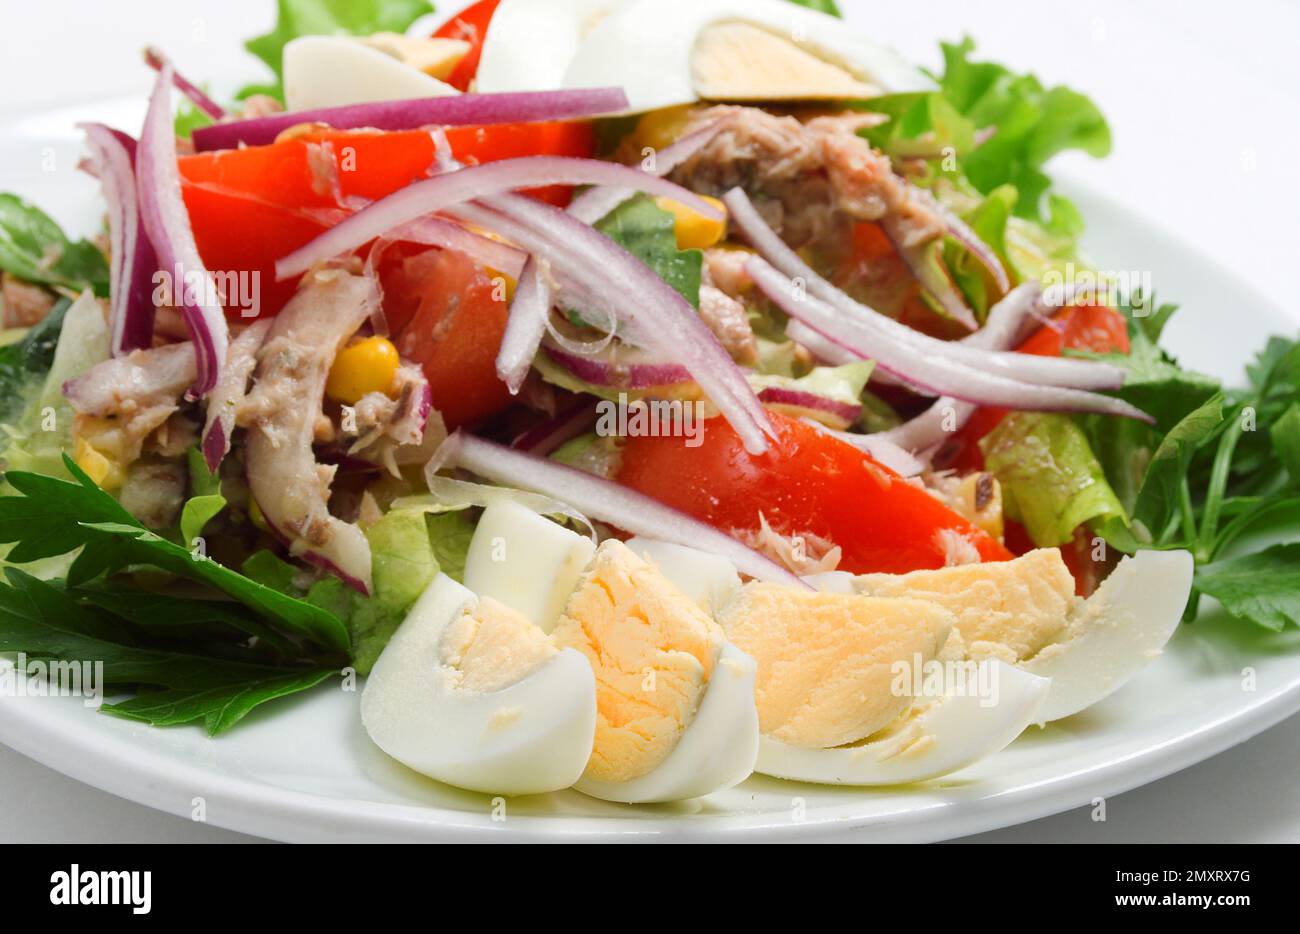 Insalata Tonno - Traditional Salad From Italy Stock Photo